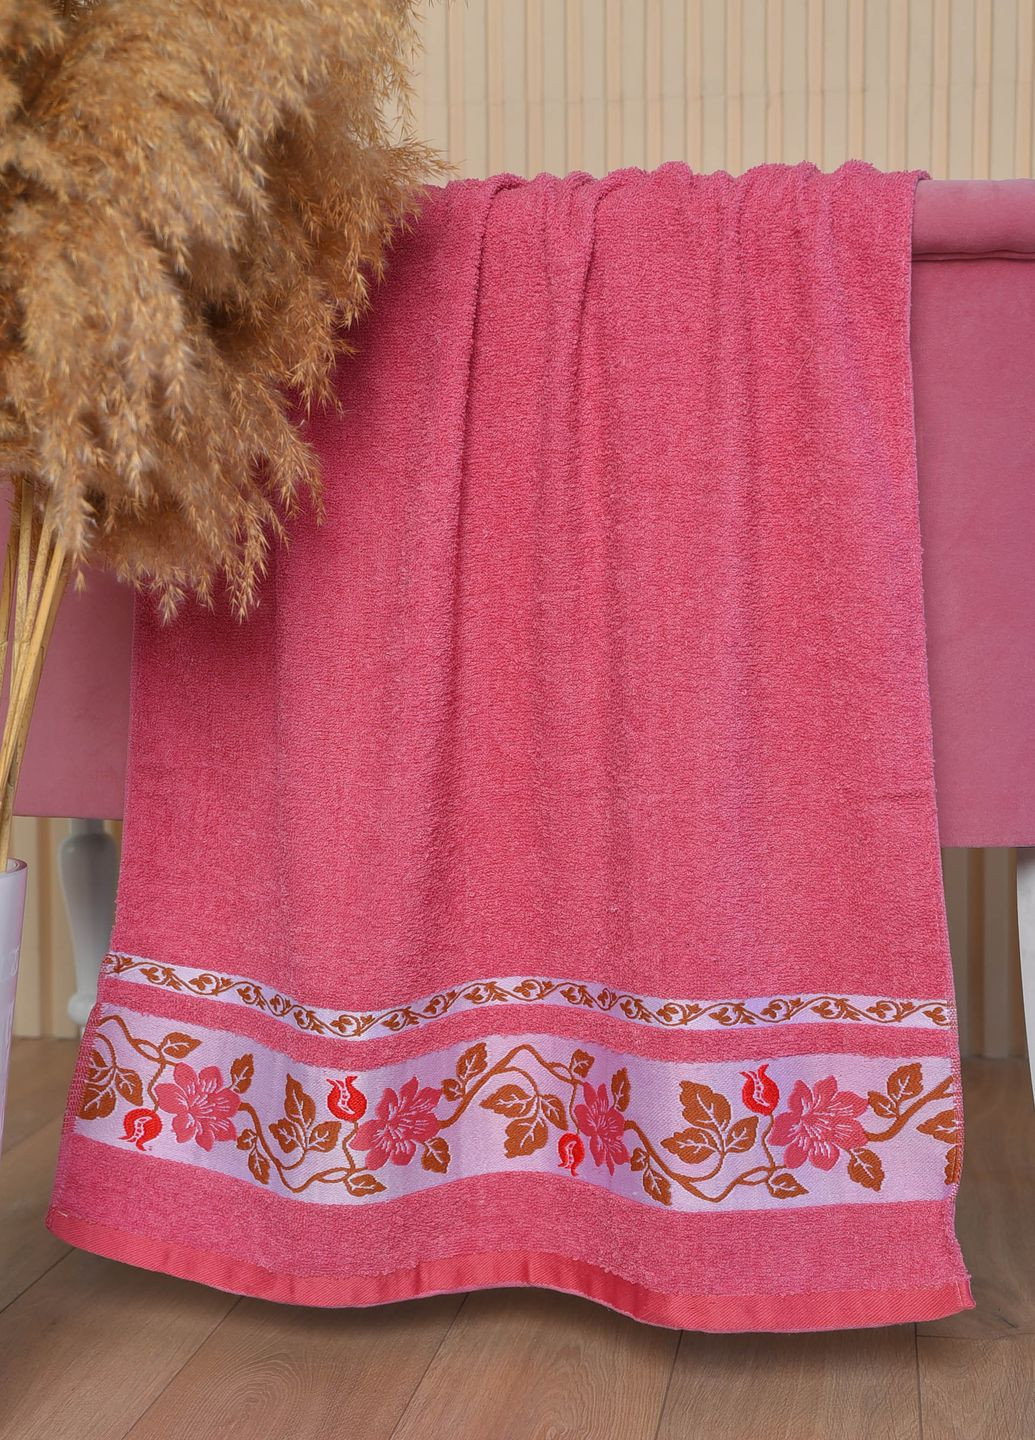 Let's Shop полотенце банное махровое бордового цвета цветочный бордовый производство - Турция